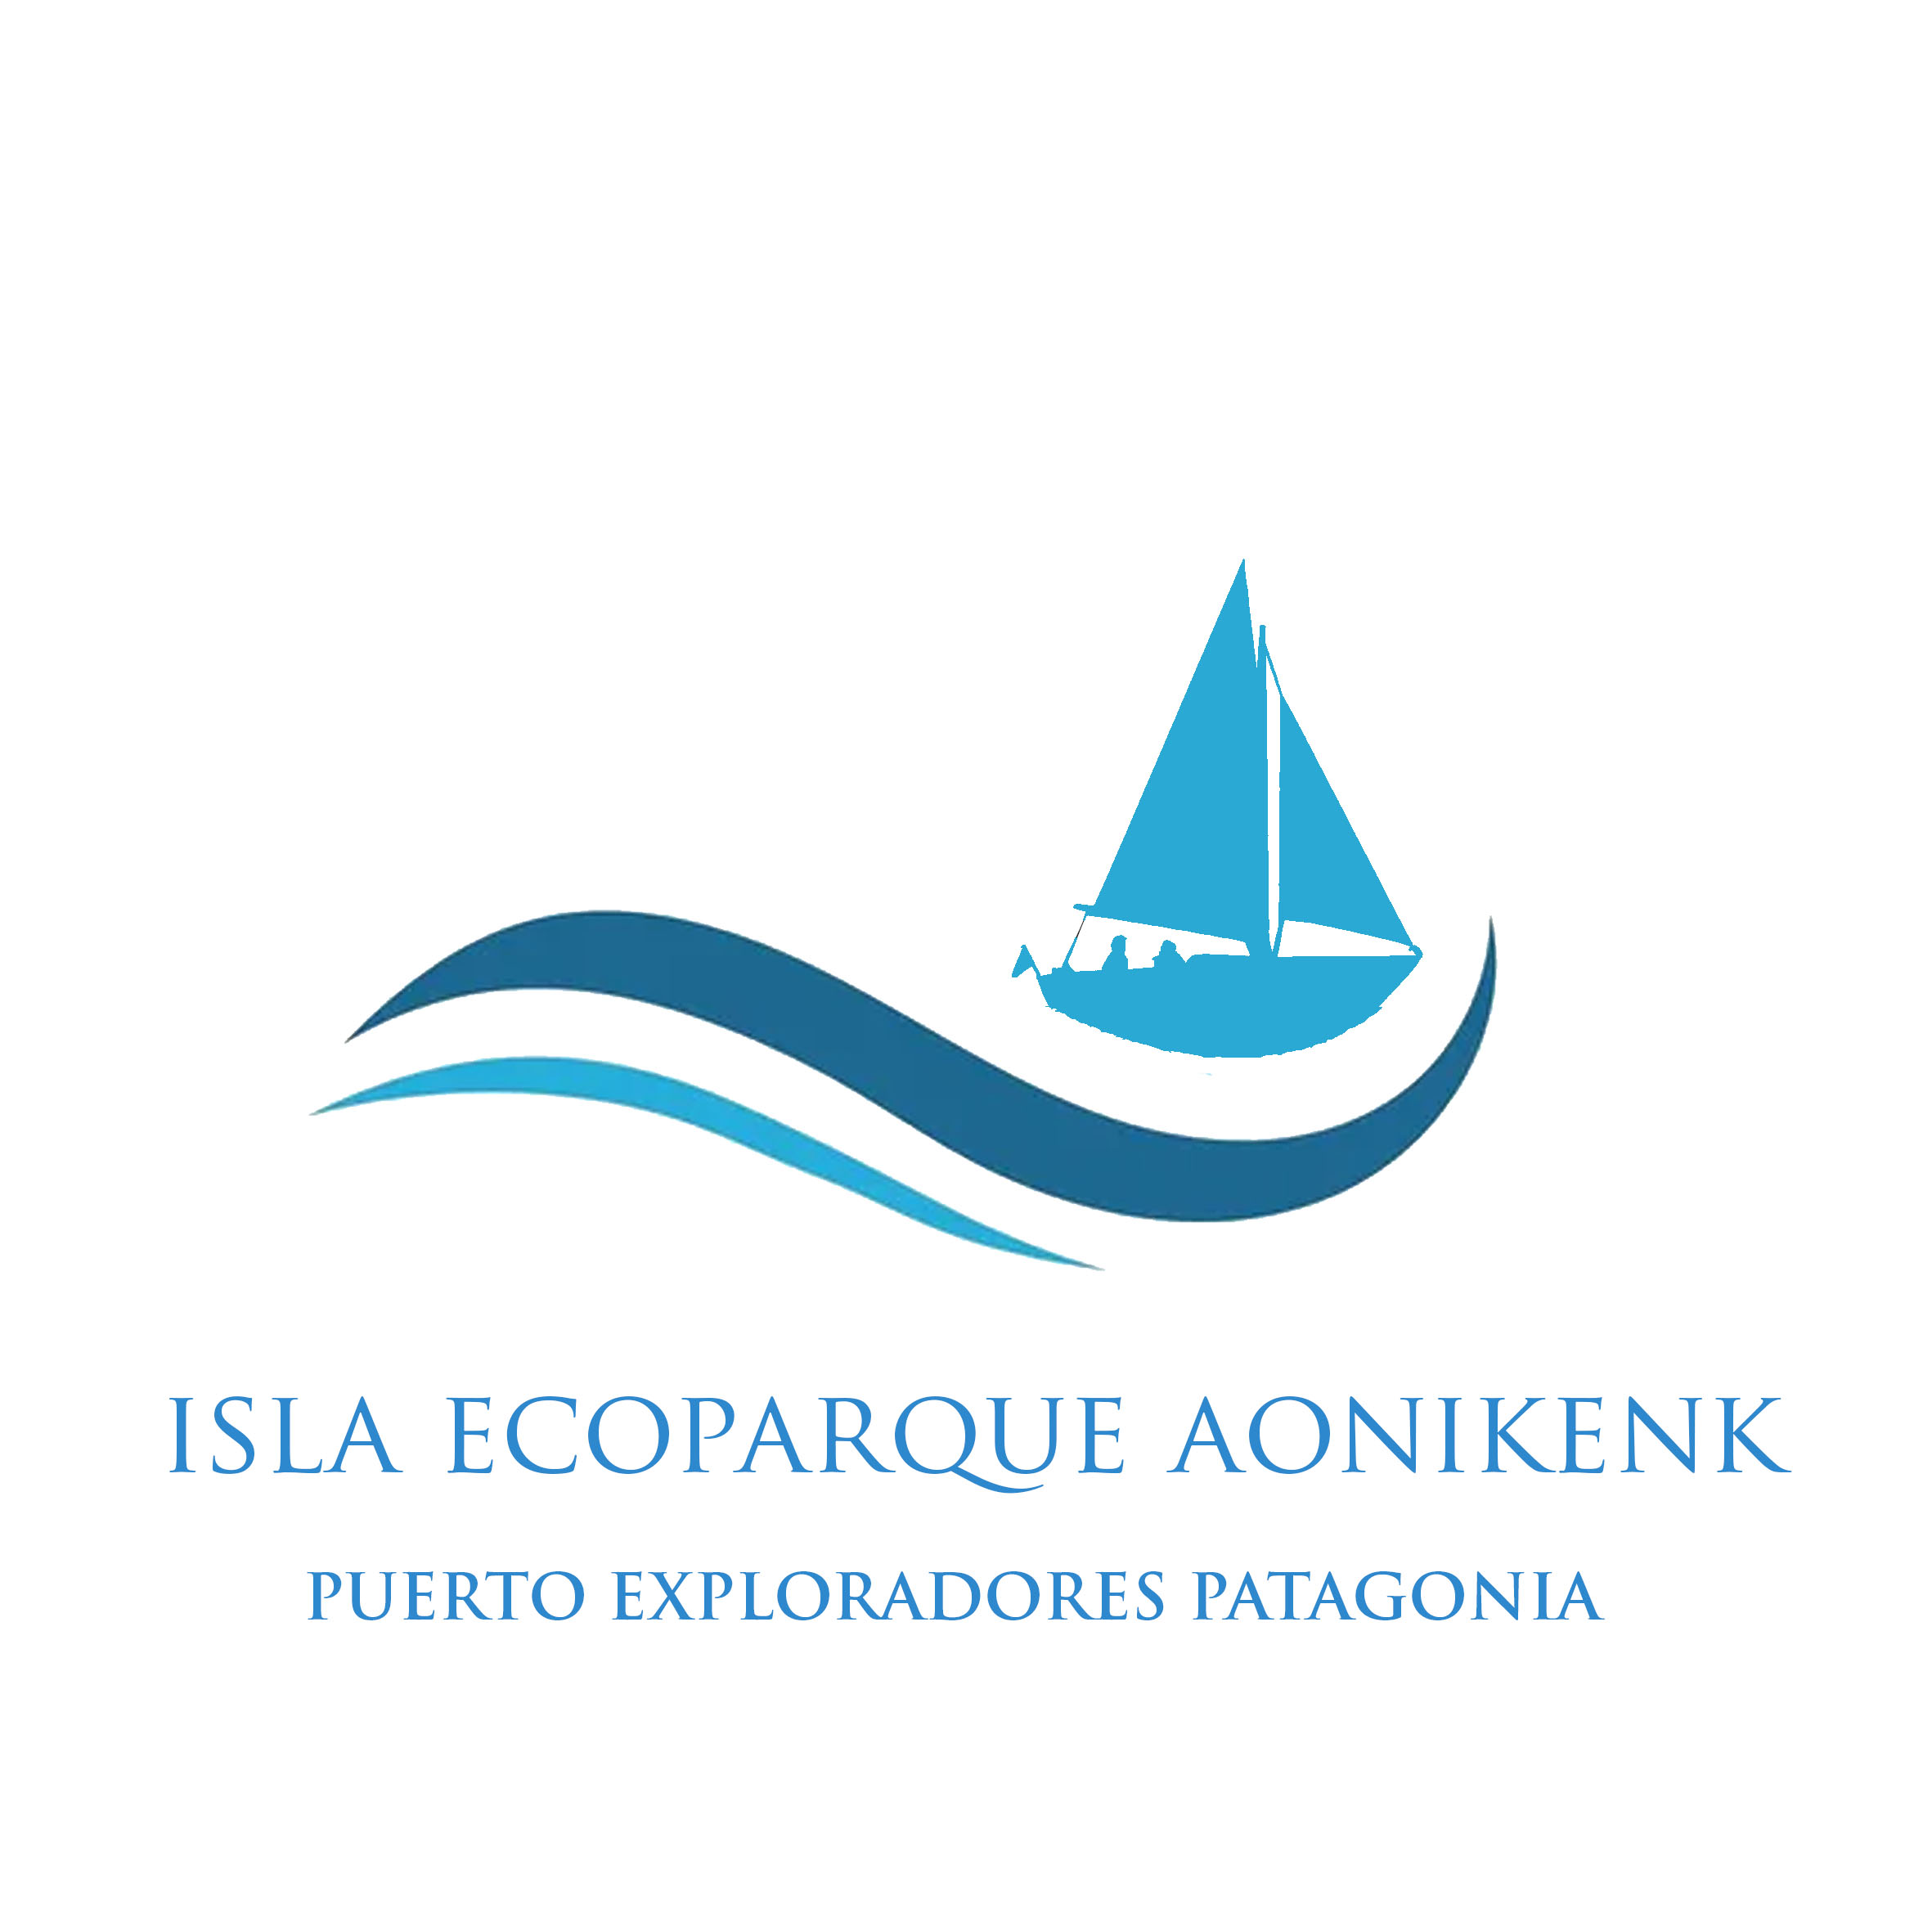 www.aonikenkpatagonia.com logo